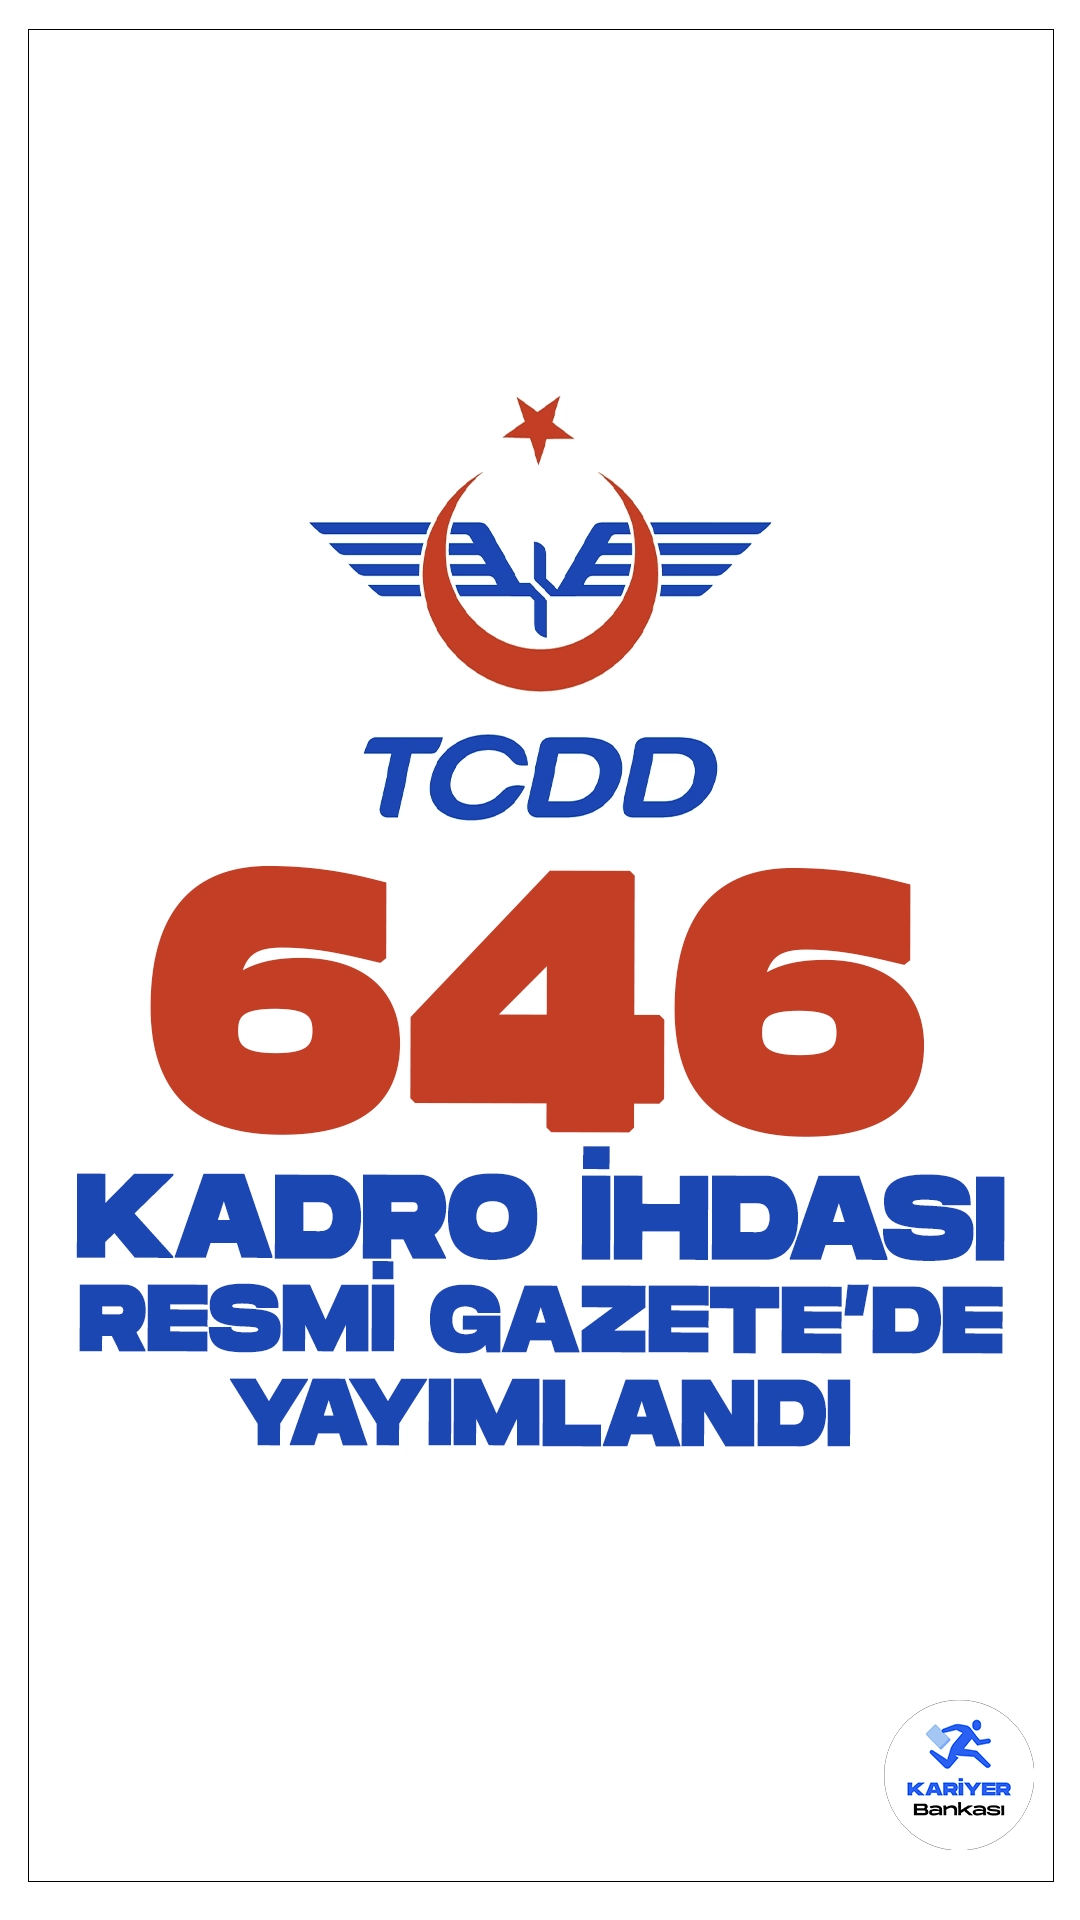 TCDD 646 Kadro İhdası Resmi Gazete'de Yayımlandı. 28 Mayıs 2024 tarihli Resmi Gazete'de yayımlanan duyuruya göre, Cumhurbaşkanı Recep Tayyip Erdoğan’ın imzasıyla T.C. Devlet Demiryolları İşletmesi Genel Müdürlüğüne (TCDD) 646 boş kadro ihdas edildi.